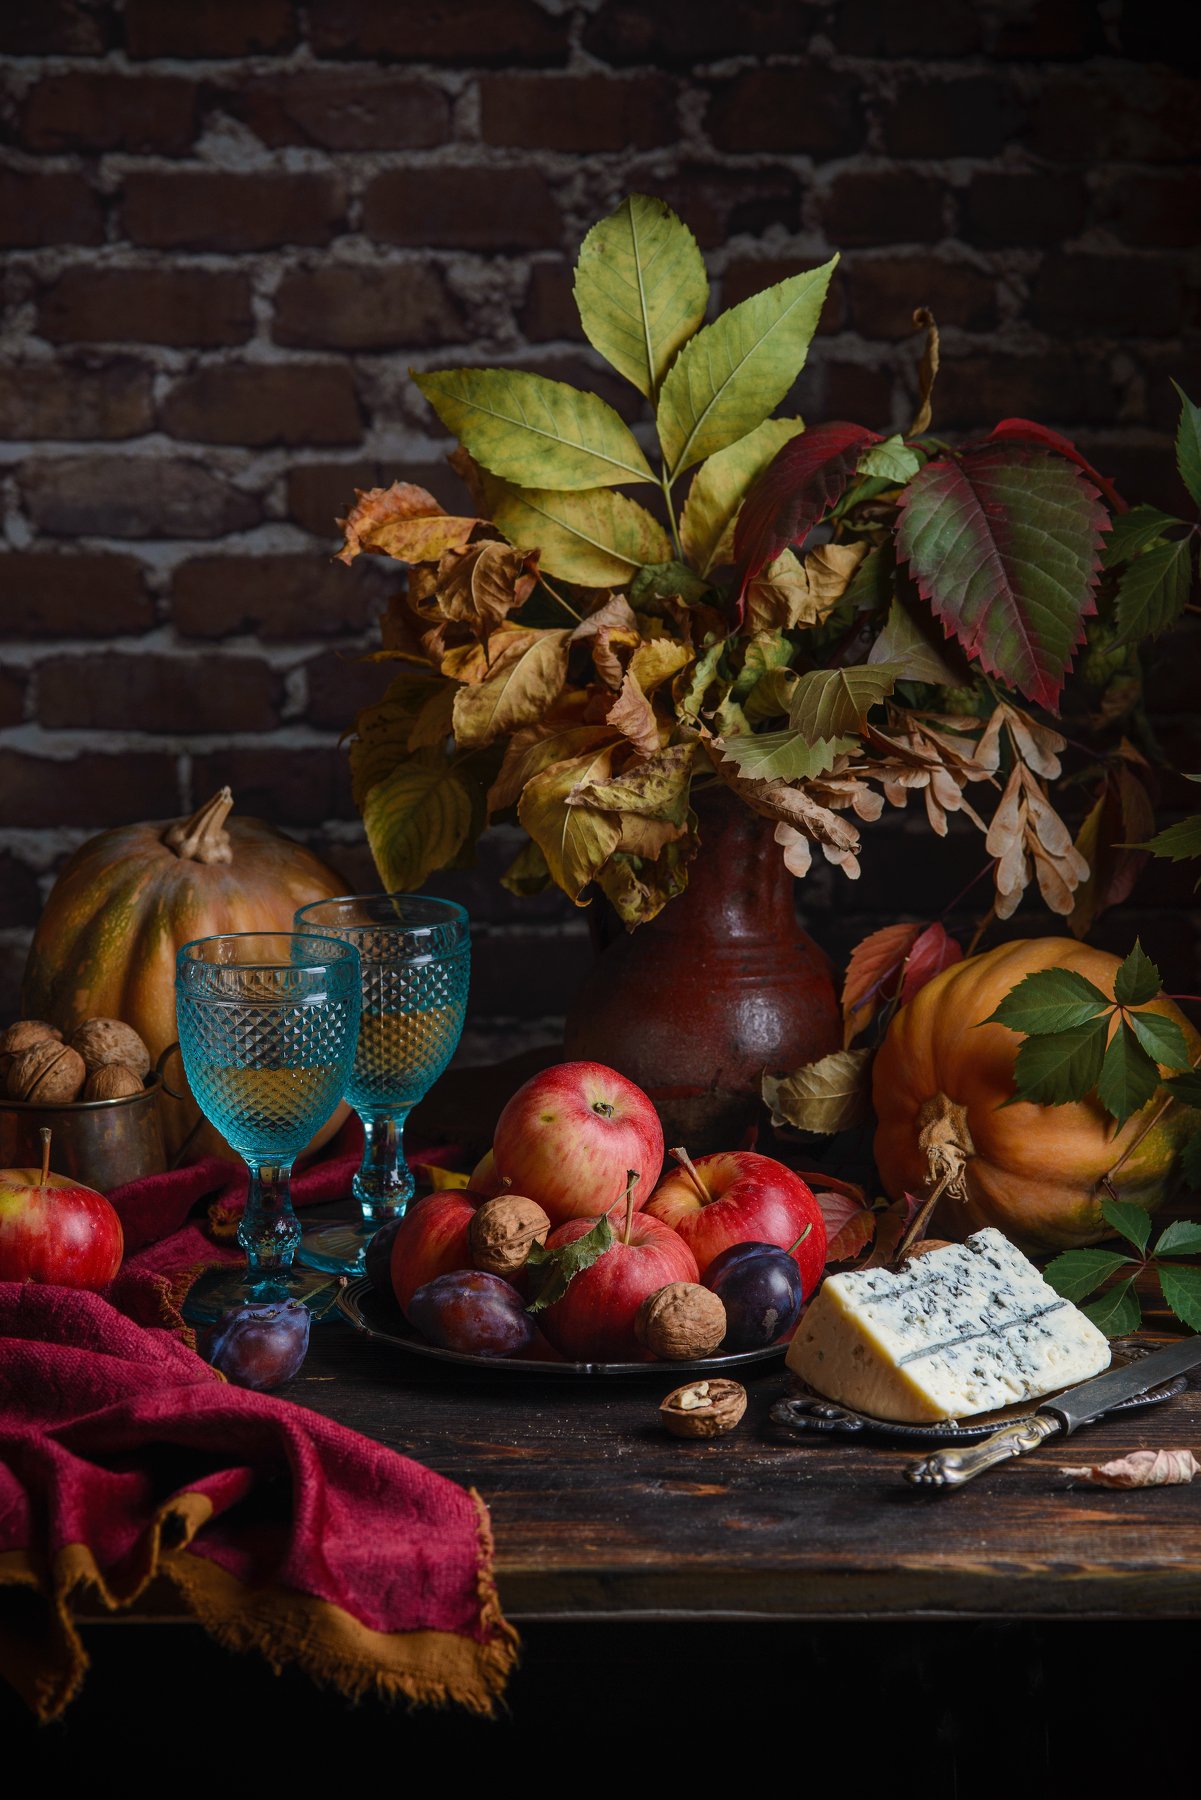 яблоки, сливы, орехи, тыквы, листья, вино, сыр, fashionfoodfoto